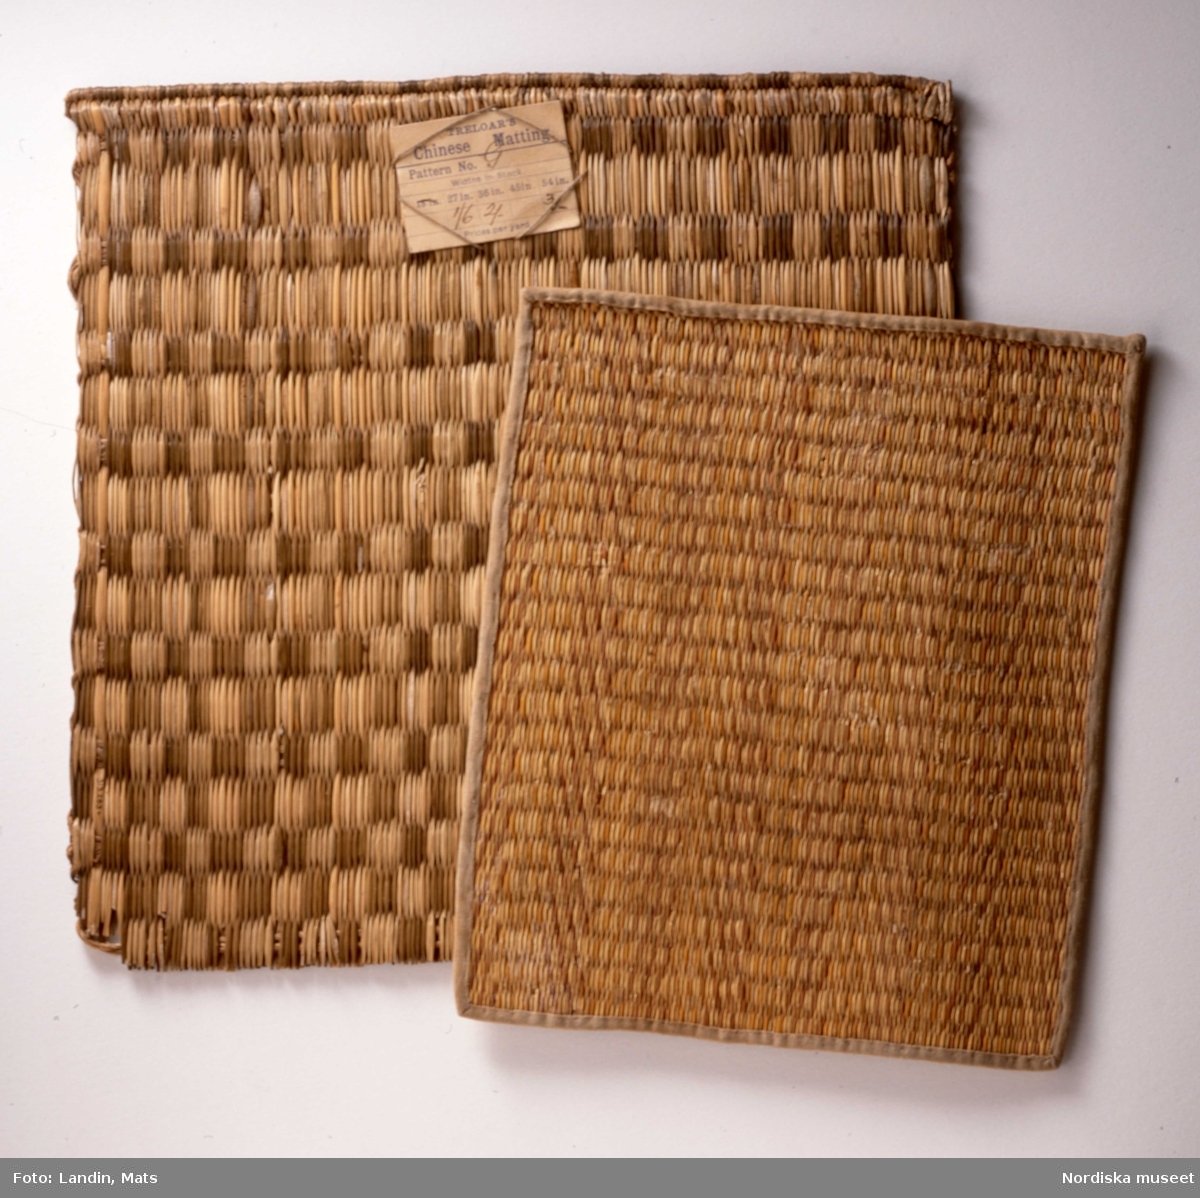 Mattprov på "Chinese matting". Mattorna användes gärna för att klä ytorna på de moderna bambumöblerna.